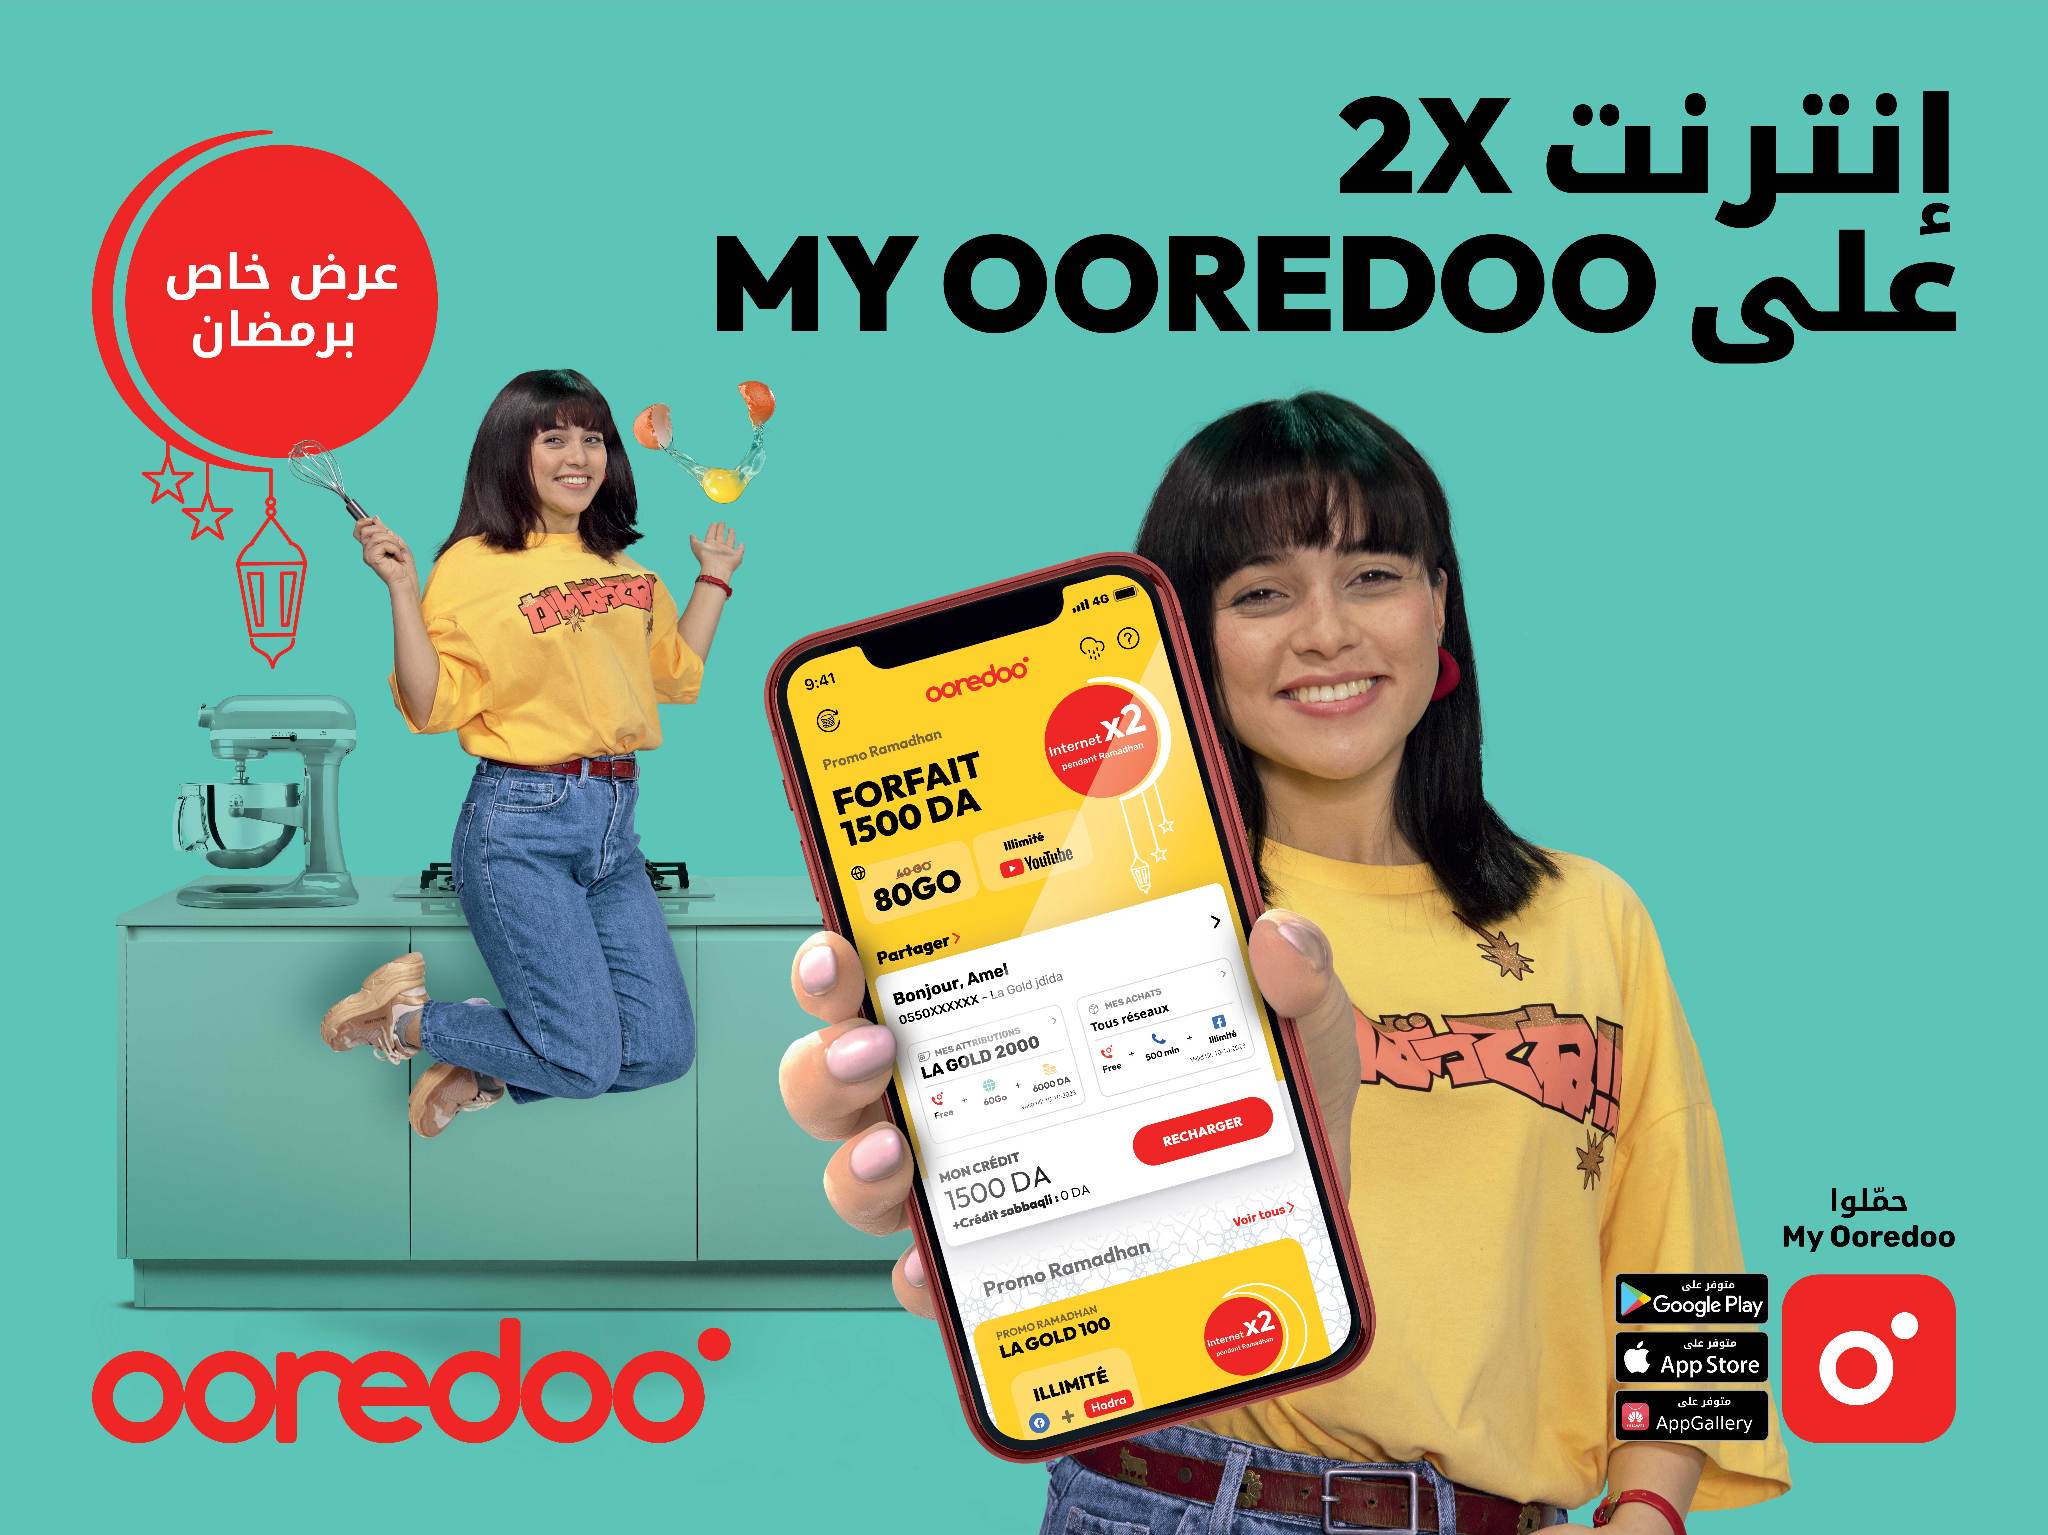 عرض ترويجي إستثنائي : ضاعفوا رصيدكم من الأنترنت مع تطبيقي Yooz و   My Ooredoo - الجزائر